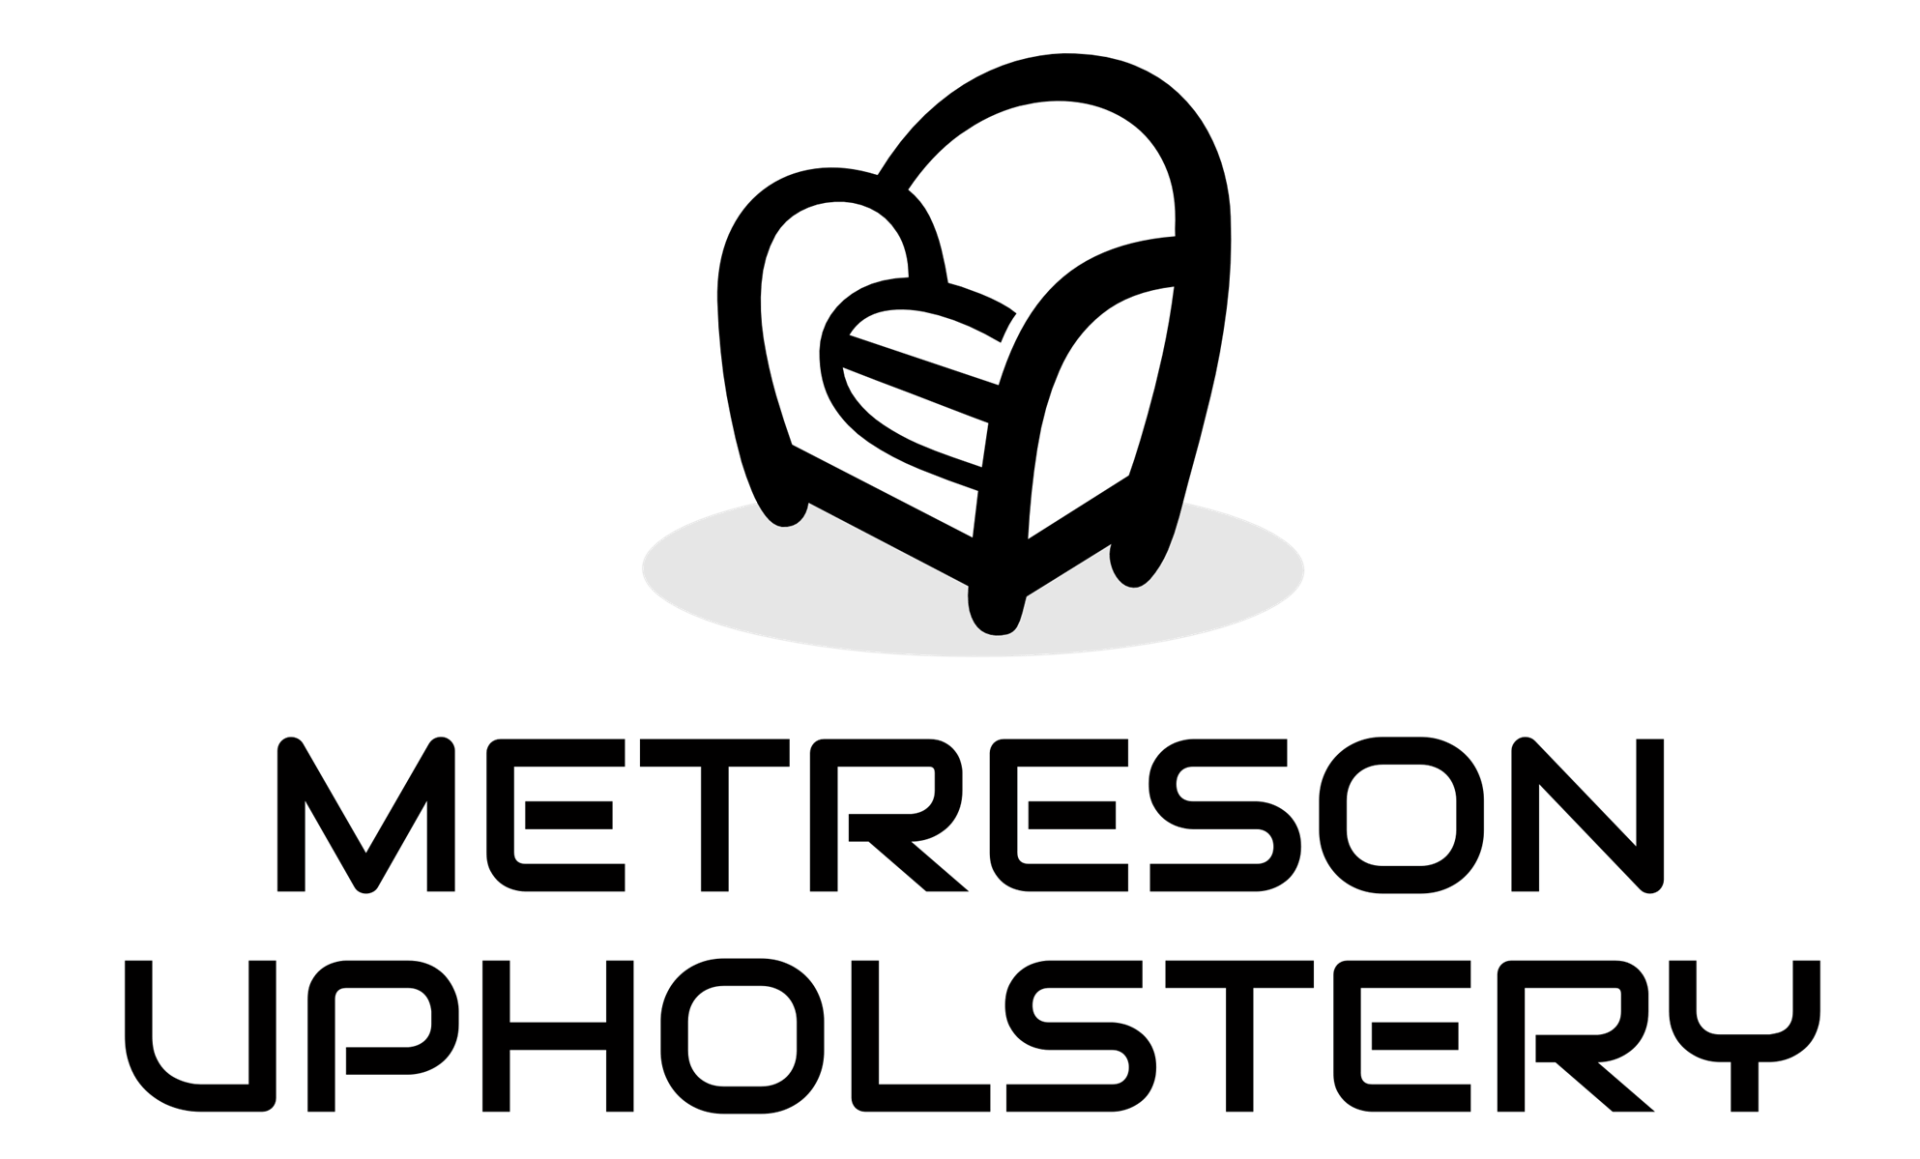 Metreson Upholstery